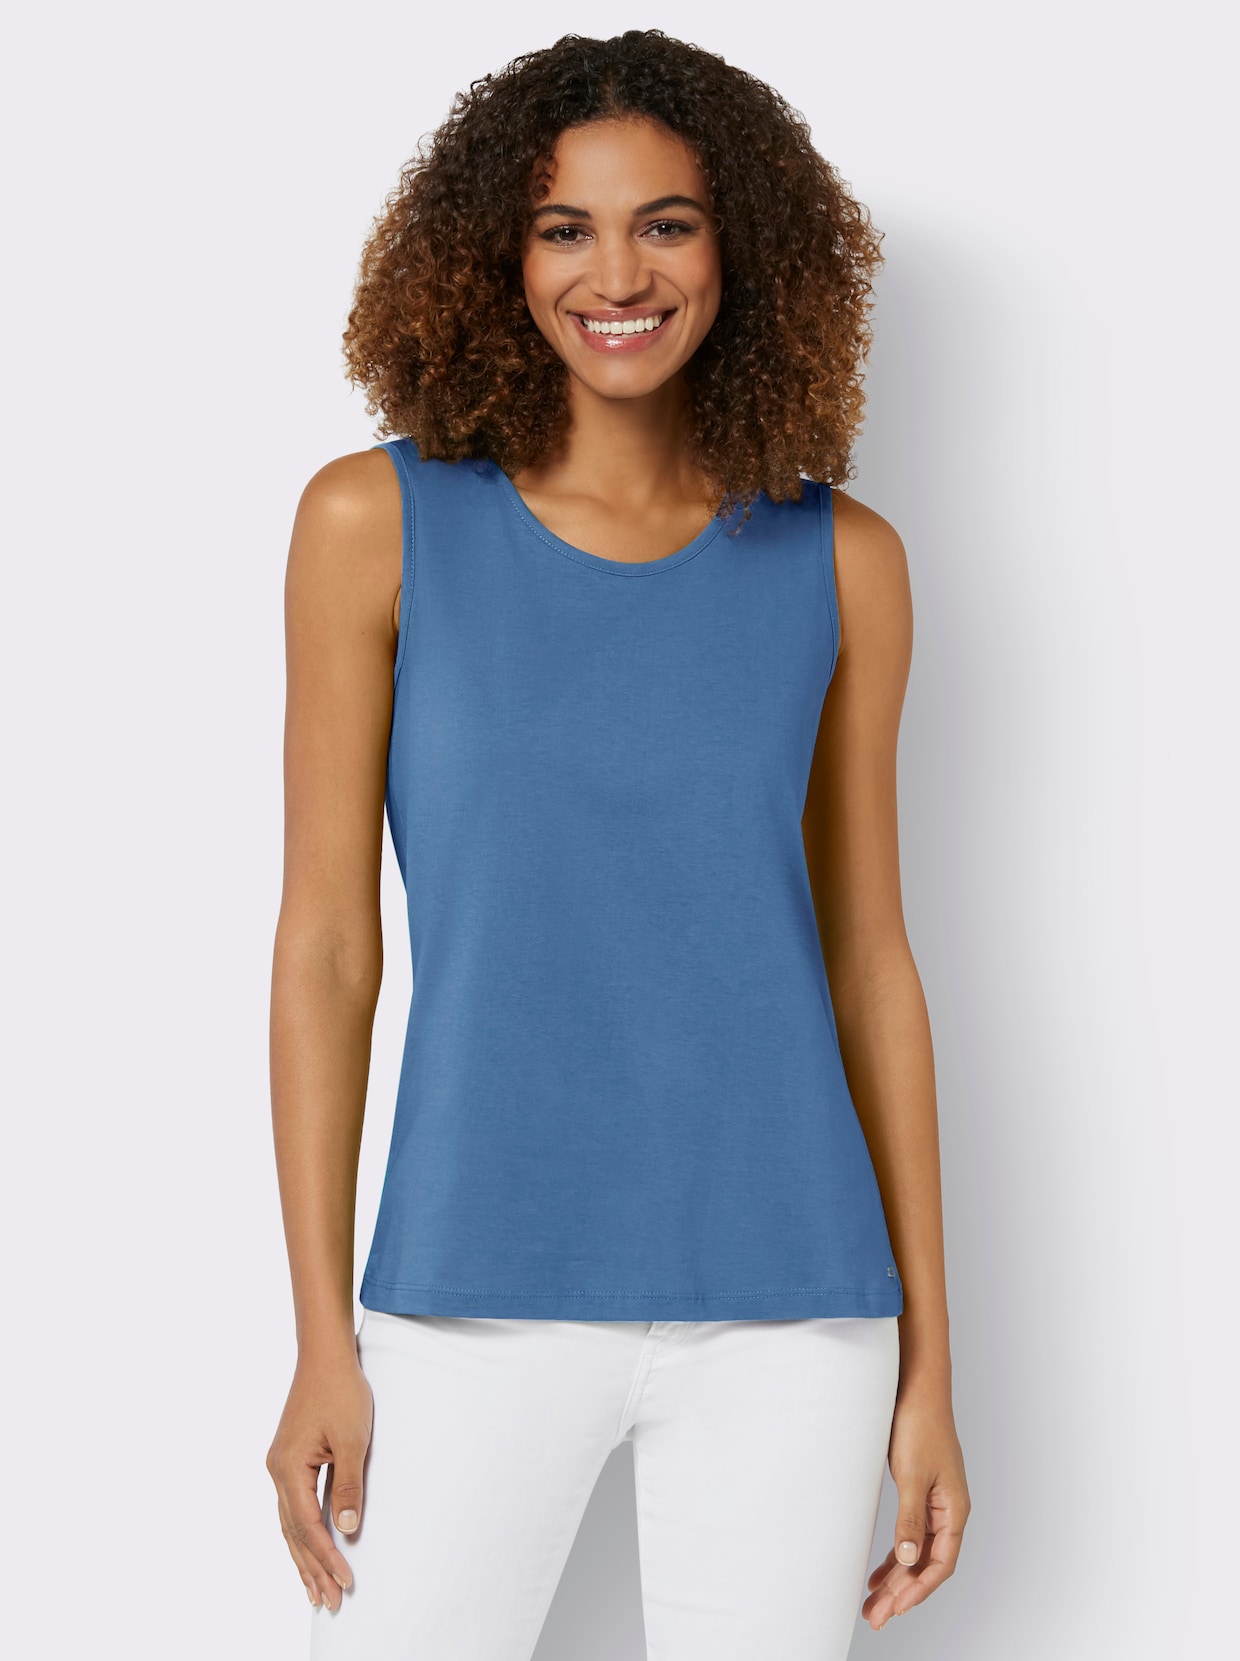 Tričkový top - jemná modrá